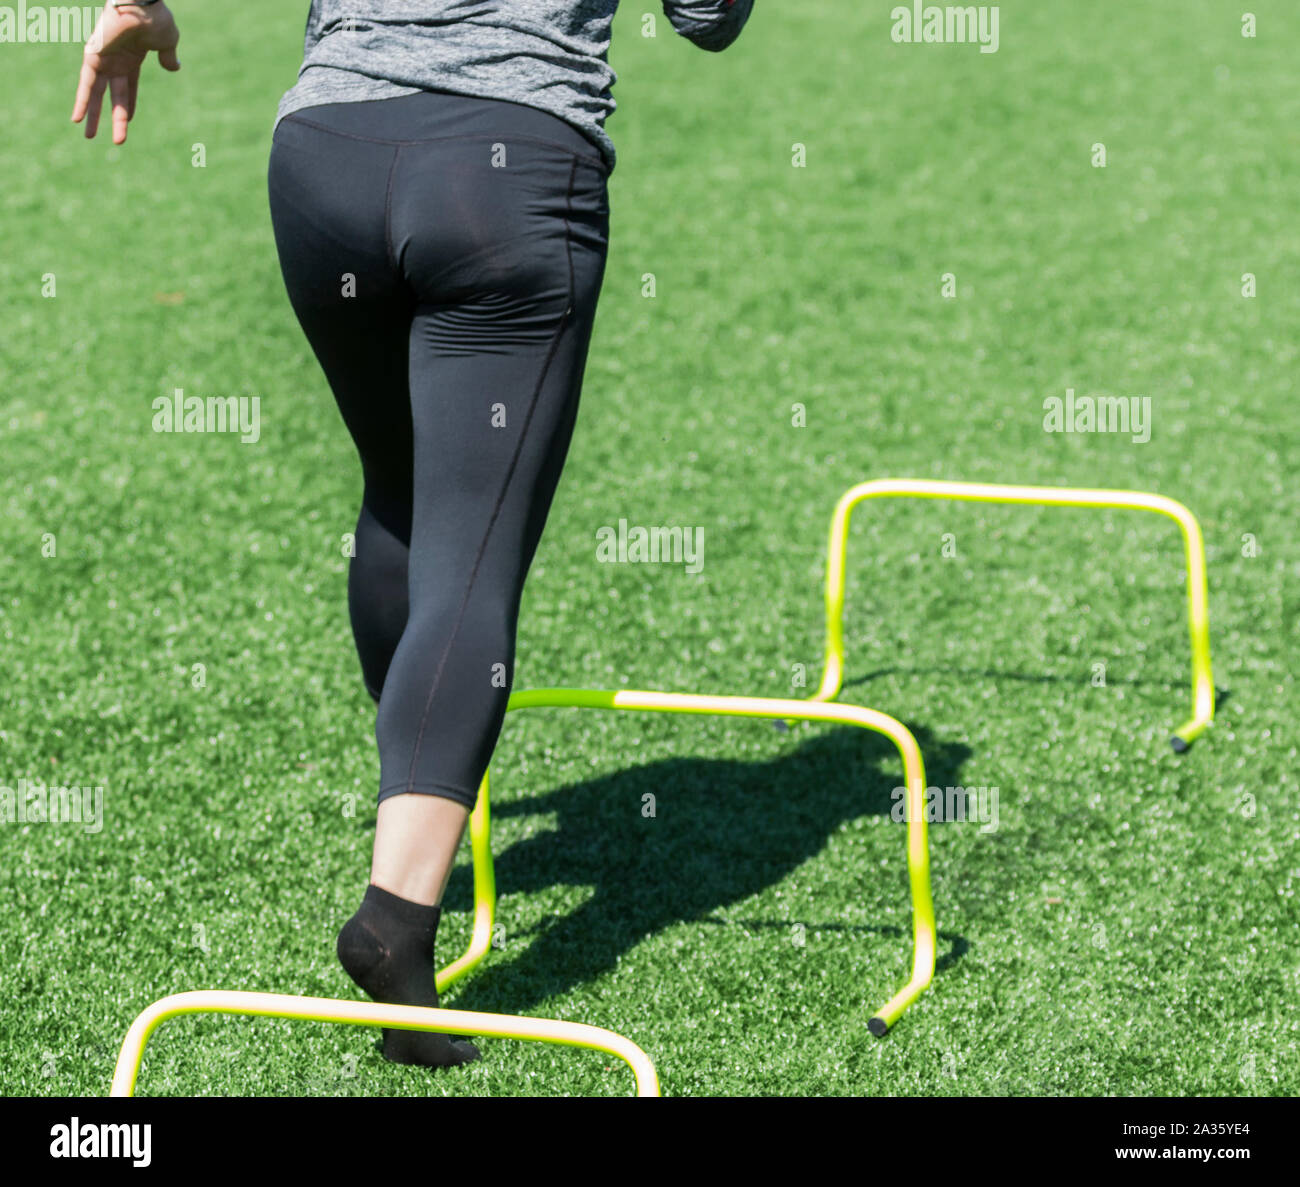 Une athlète féminine est en cours d'exécution sur jaune mini obstacles sur un terrain de gazon vert au cours d'agility avec vitesse et pas de chaussures, chaussettes seulement. Banque D'Images